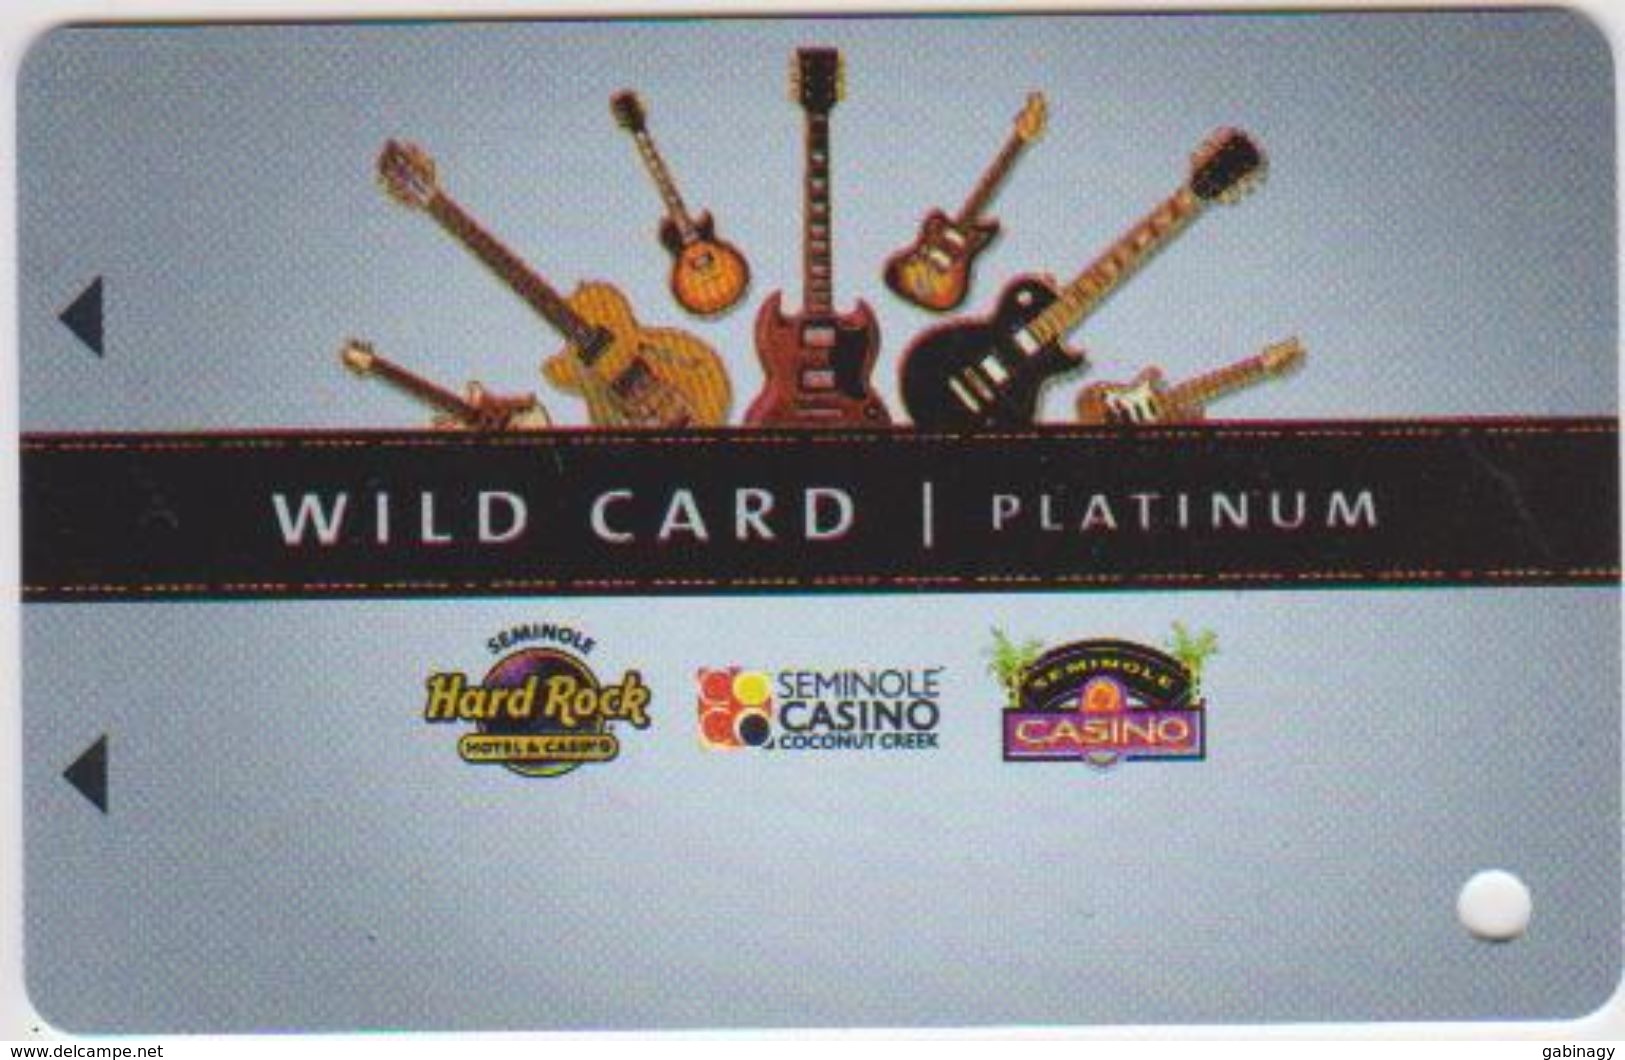 CASINO CARD - 226 - USA - HARD ROCK - Casino Cards